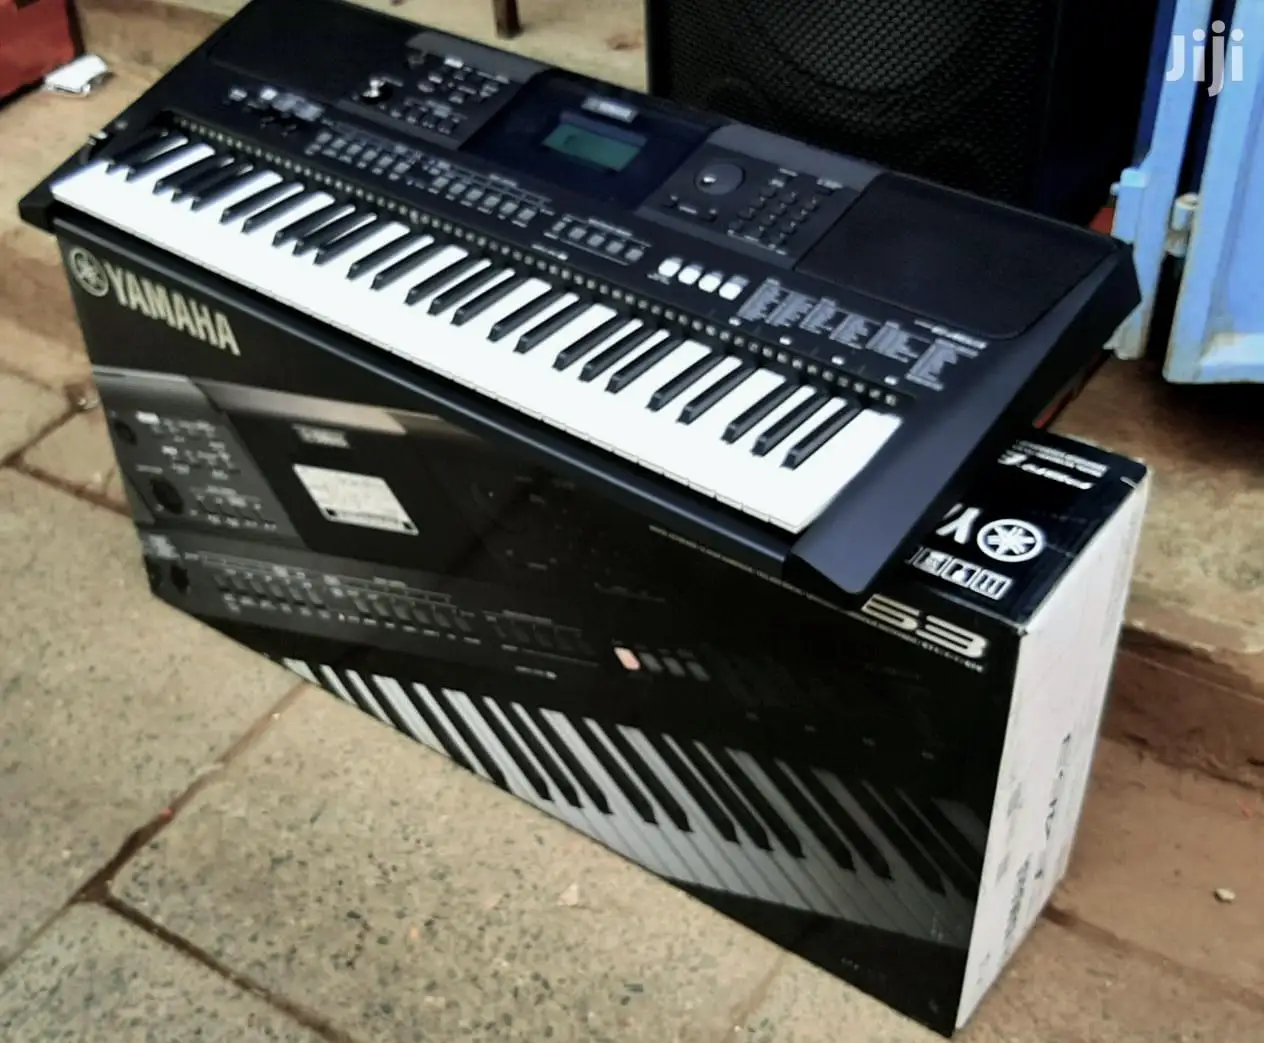 מכירות הקיץ הנחה על יוקרה אותנטית מוטיב XF8 88 מפתח פסנתר, סינתיסייזר מקלדת תחנת עבודה יסודות צרור w - 4